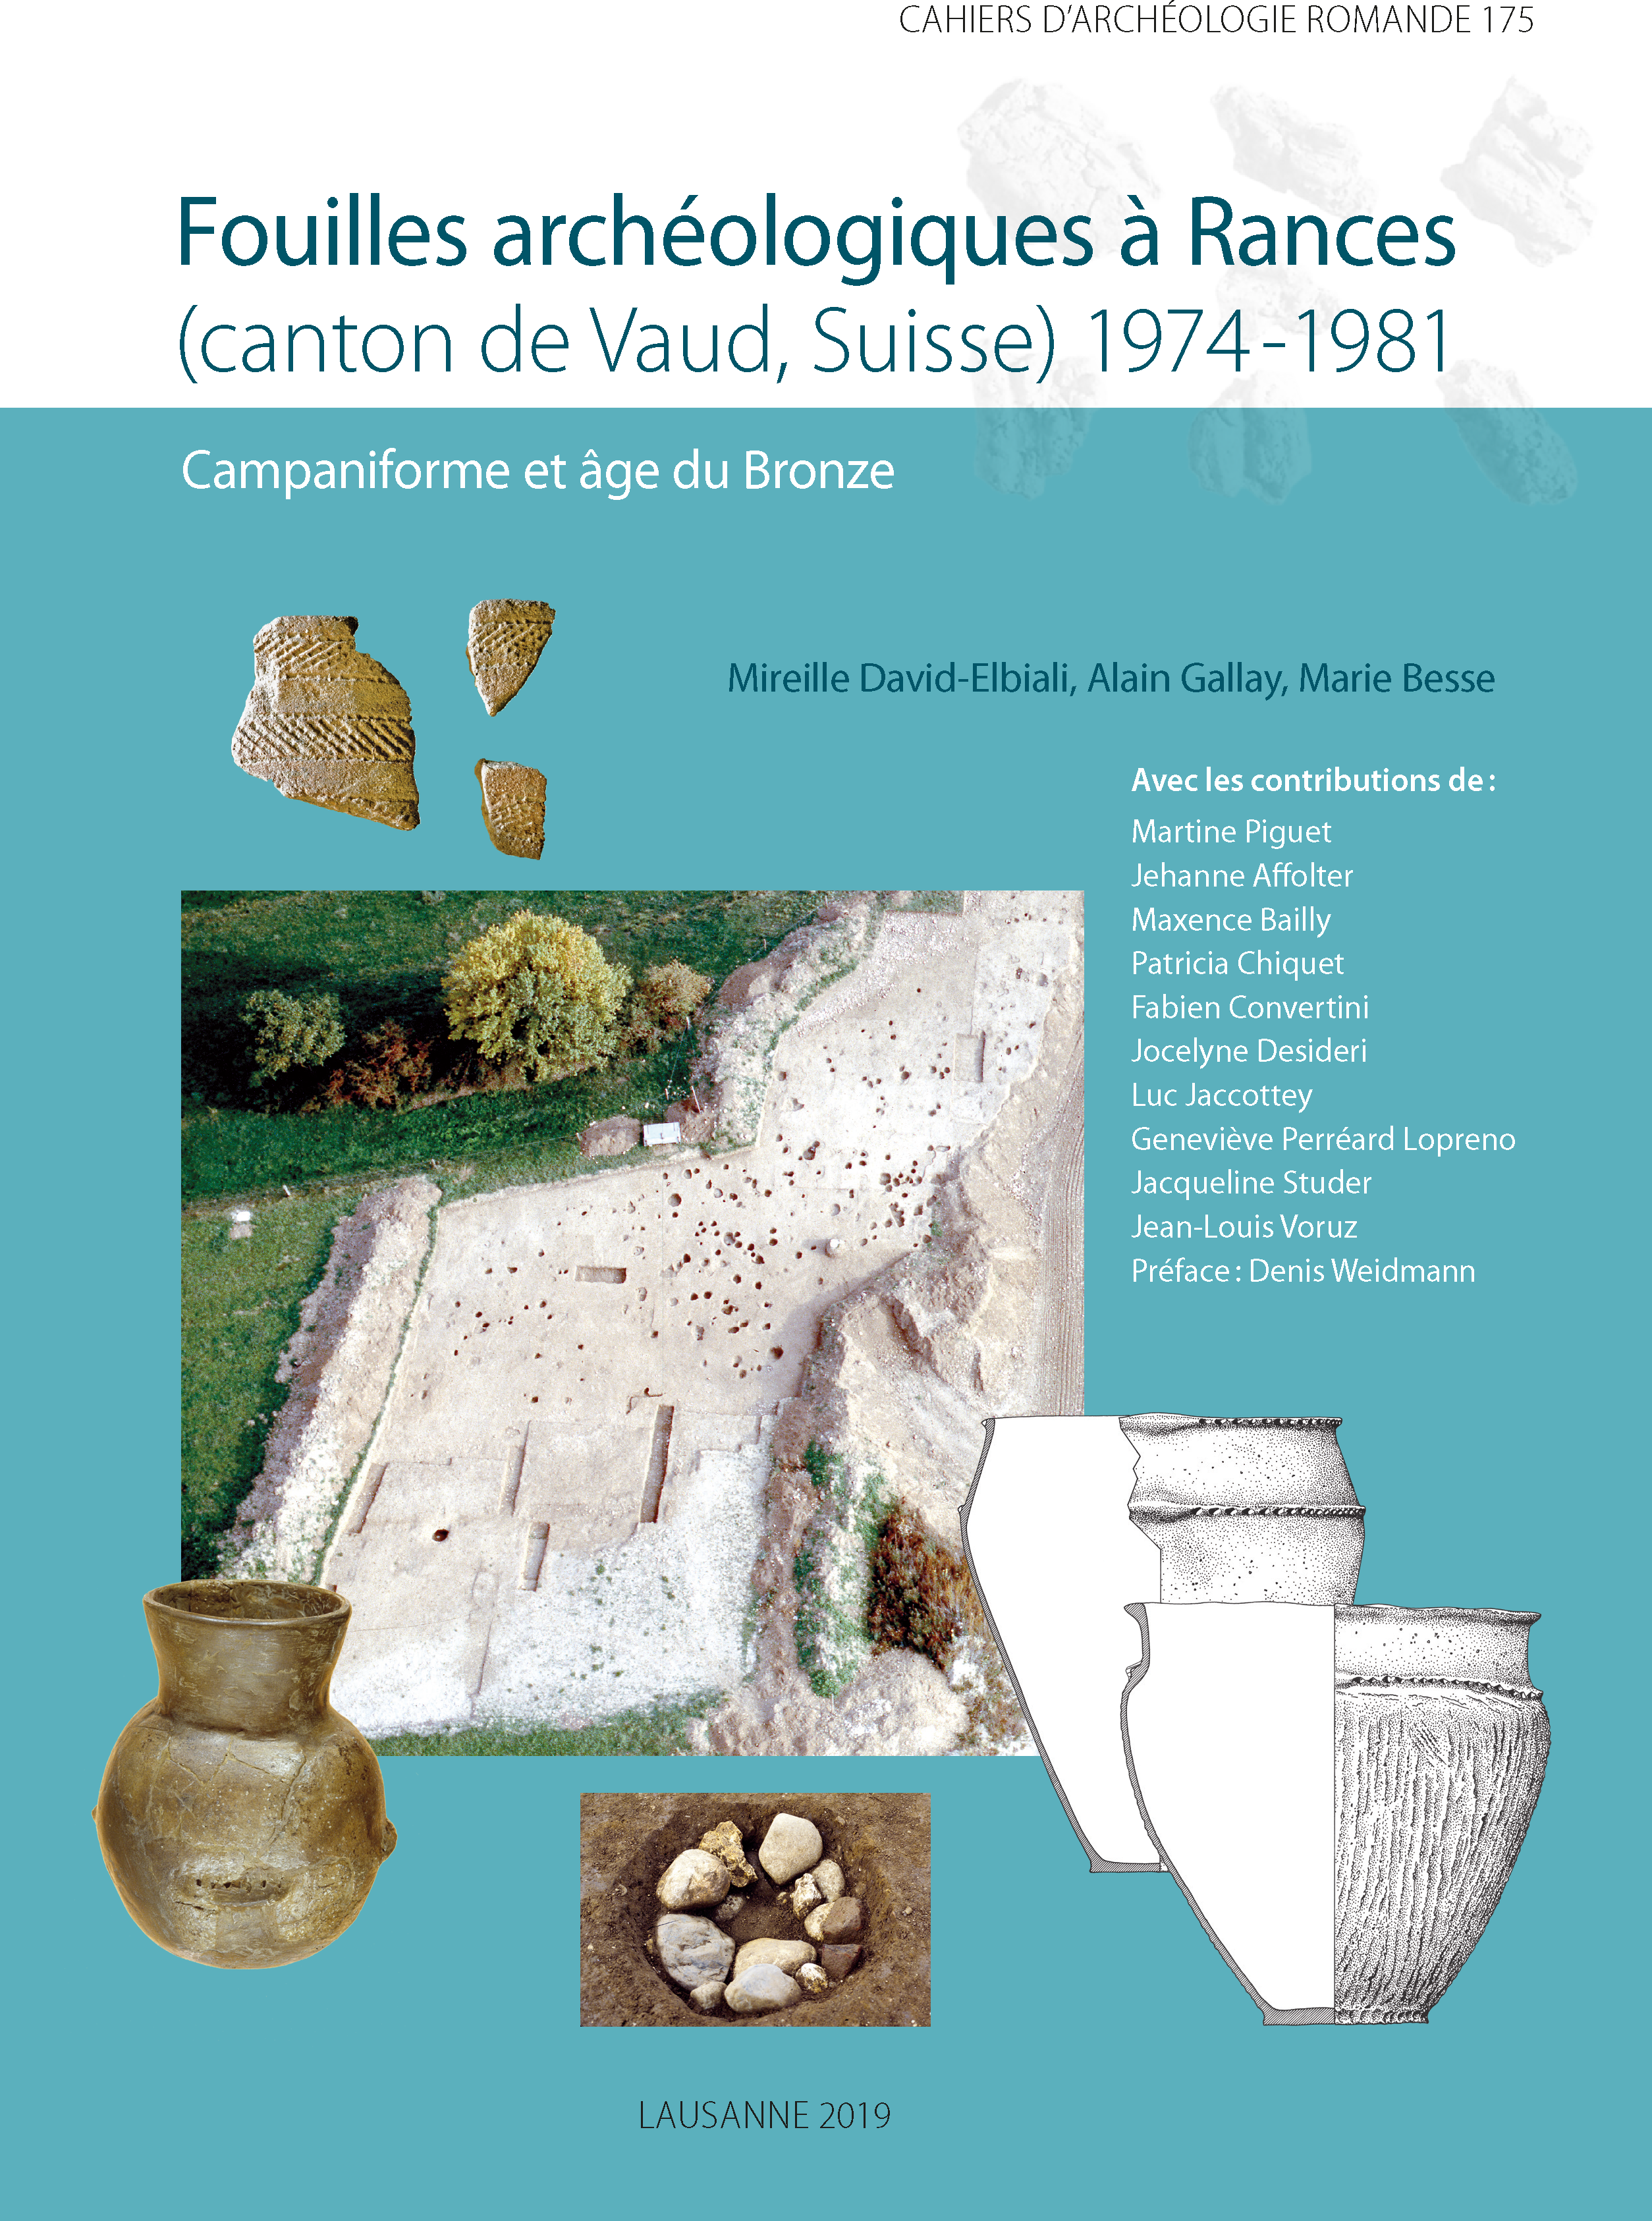 Fouilles archéologiques à Rances (canton de Vaud, Suisse) 1974-1981. Campaniforme et âge du Bronze, (CAR 175), 2019, 336 p.